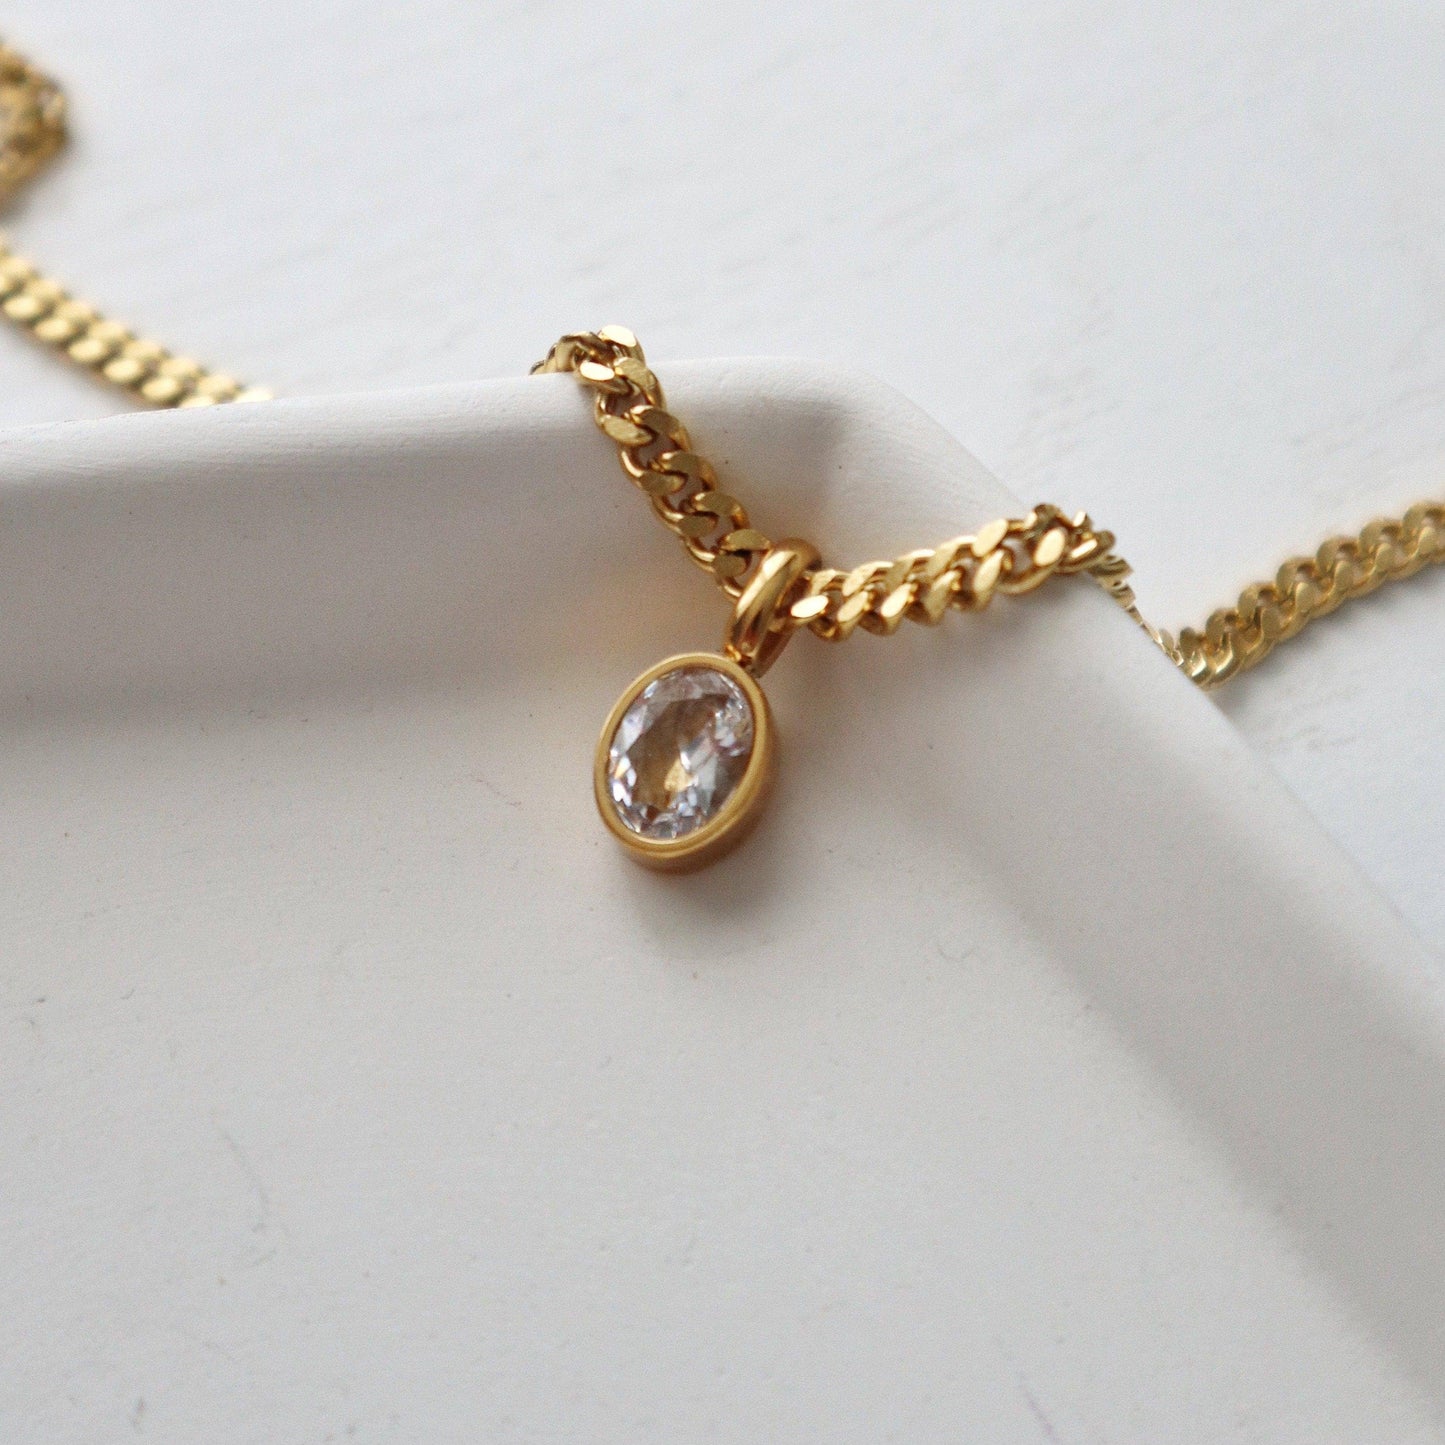 JESSA Jewelry - Oval CZ Chain Necklace